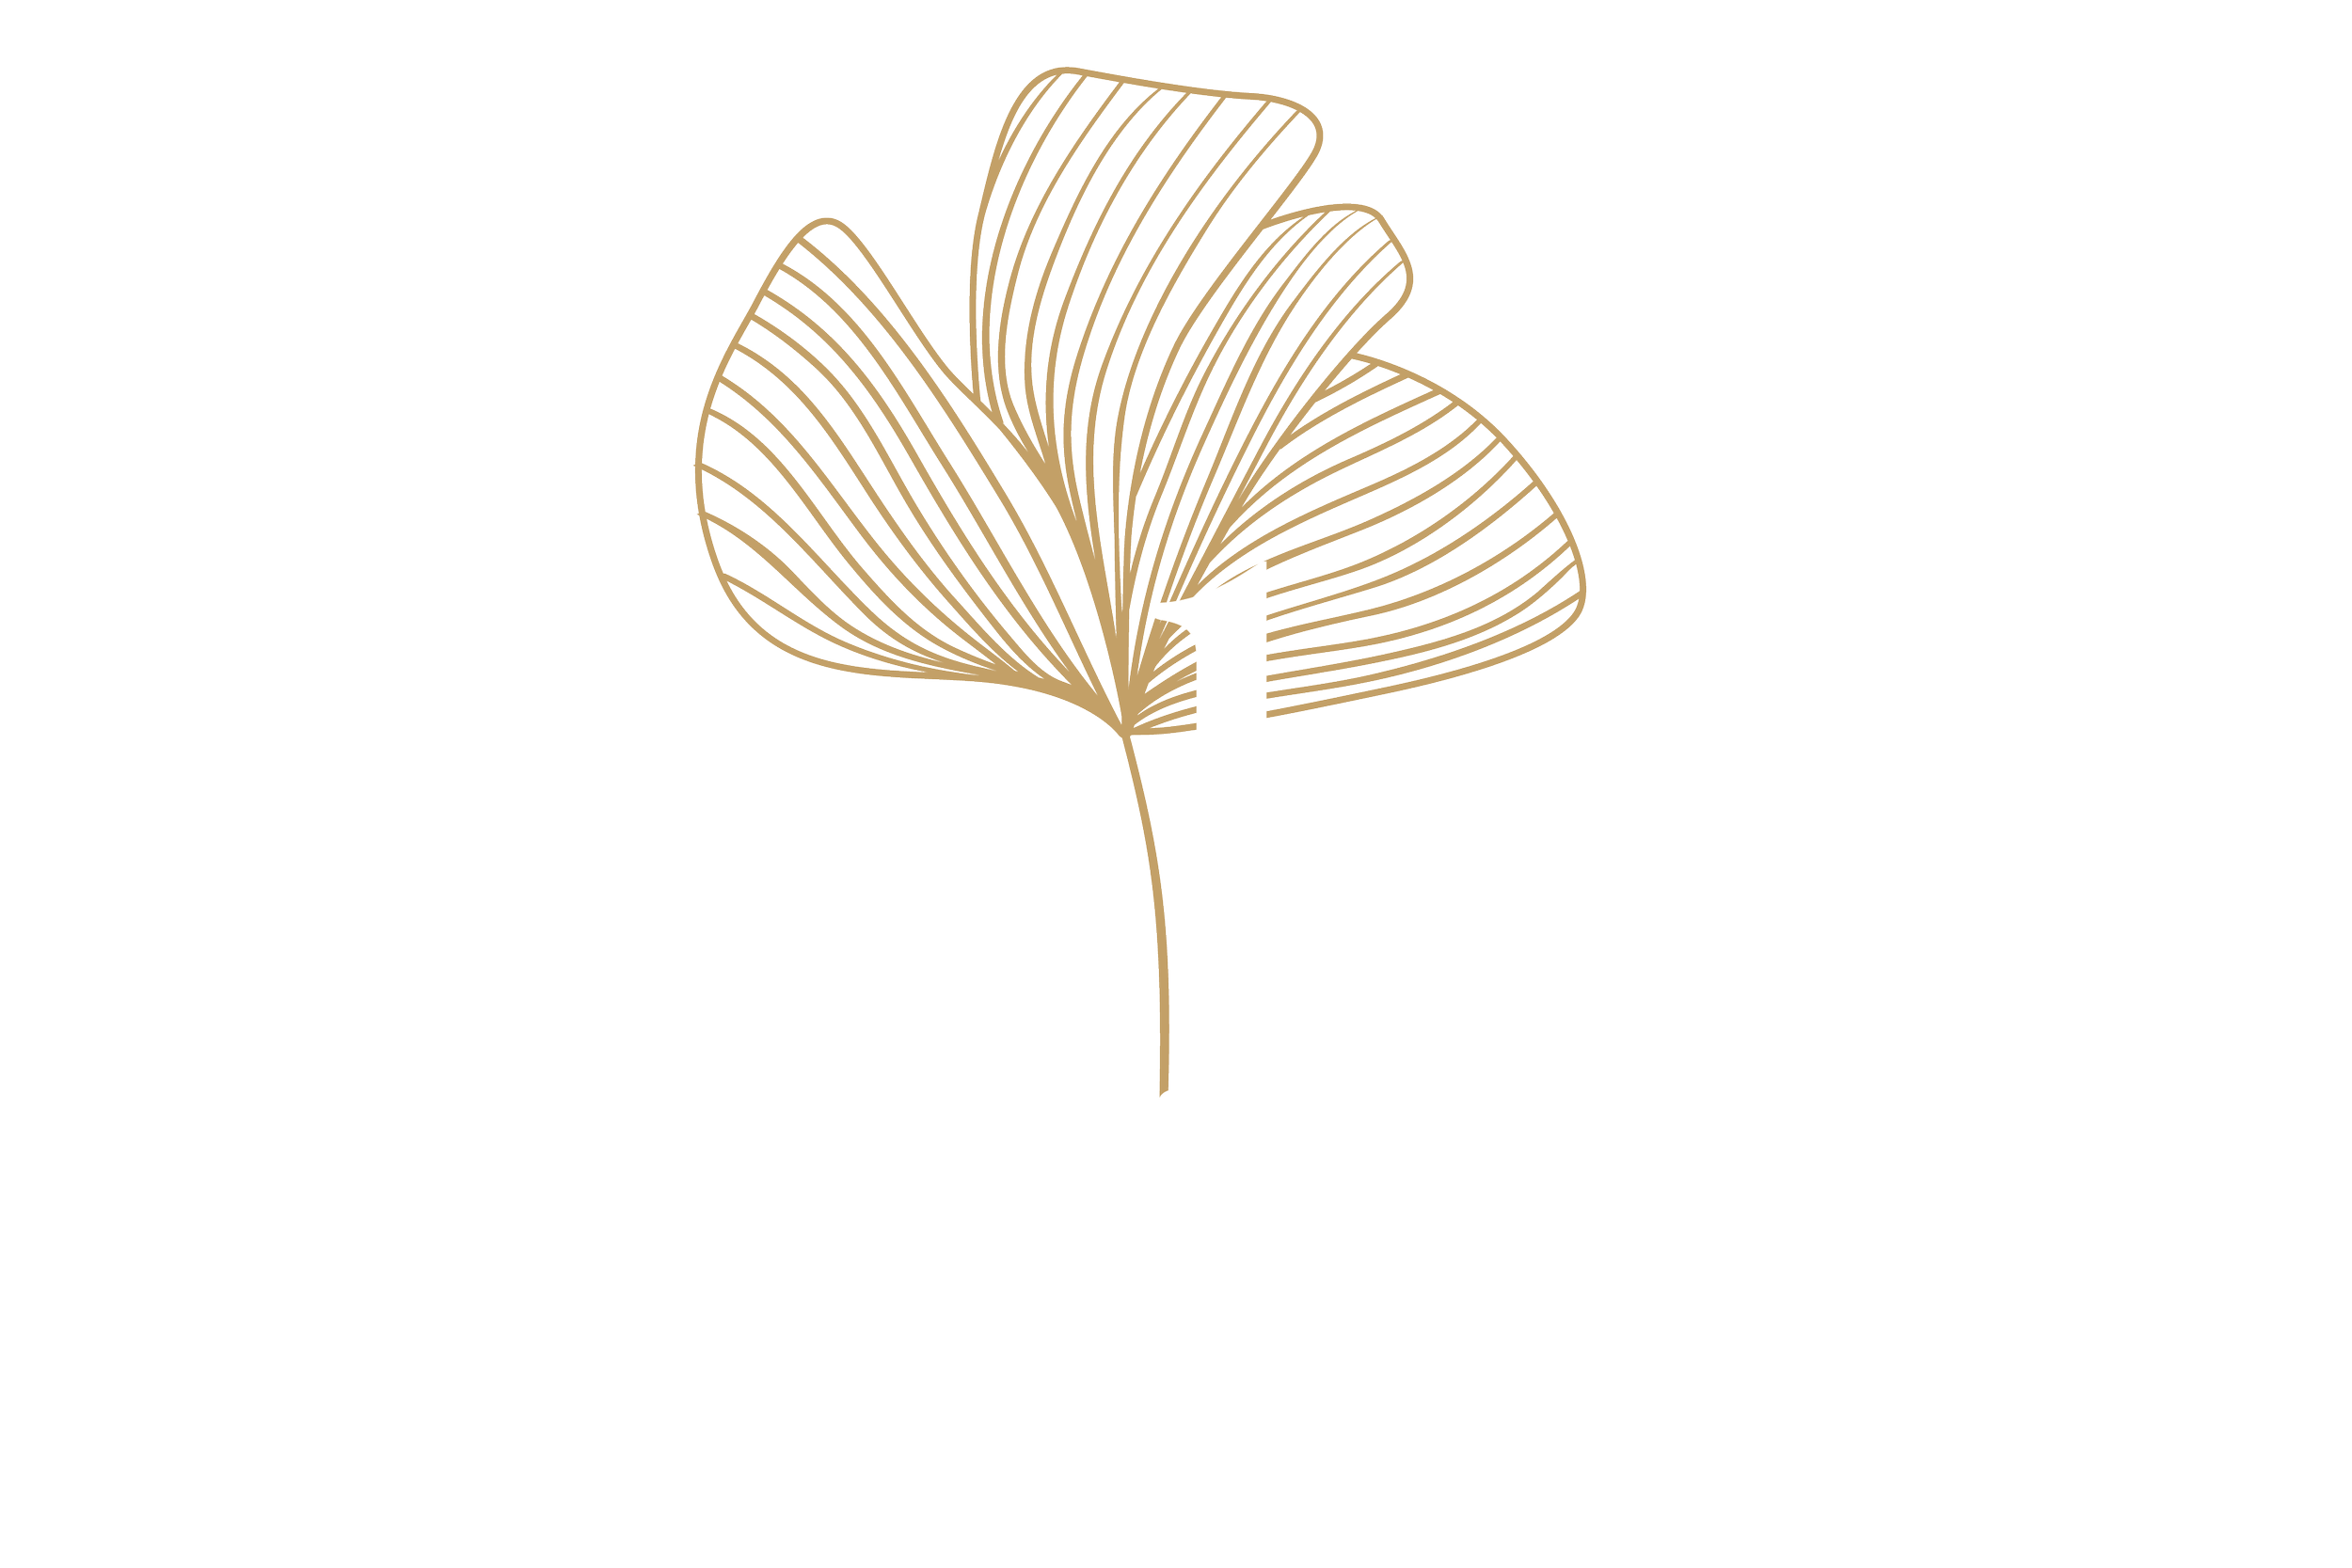 Ginkyo by Kinki